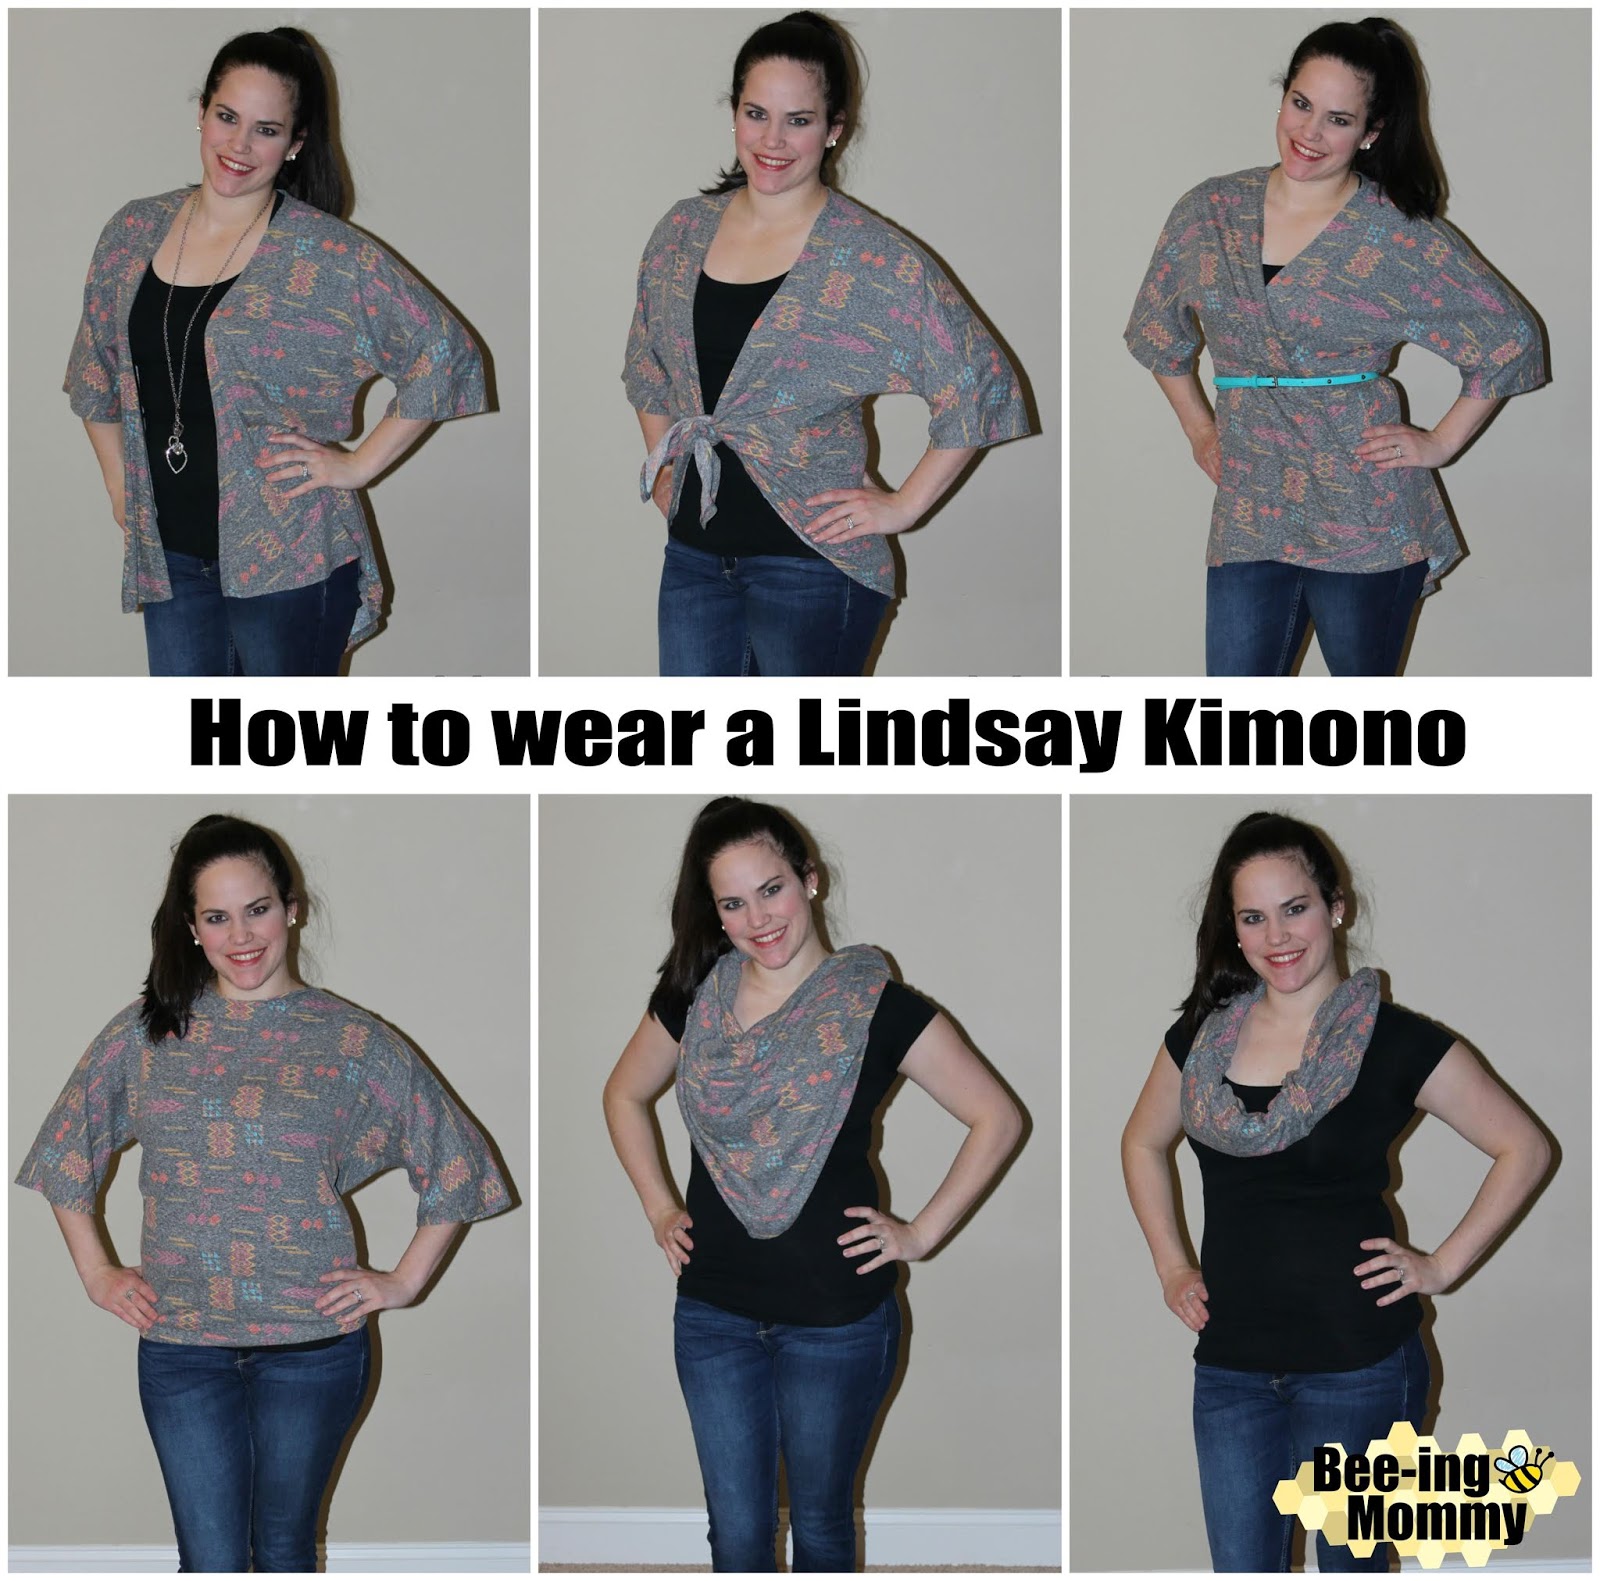 Lularoe Lindsay Size Chart